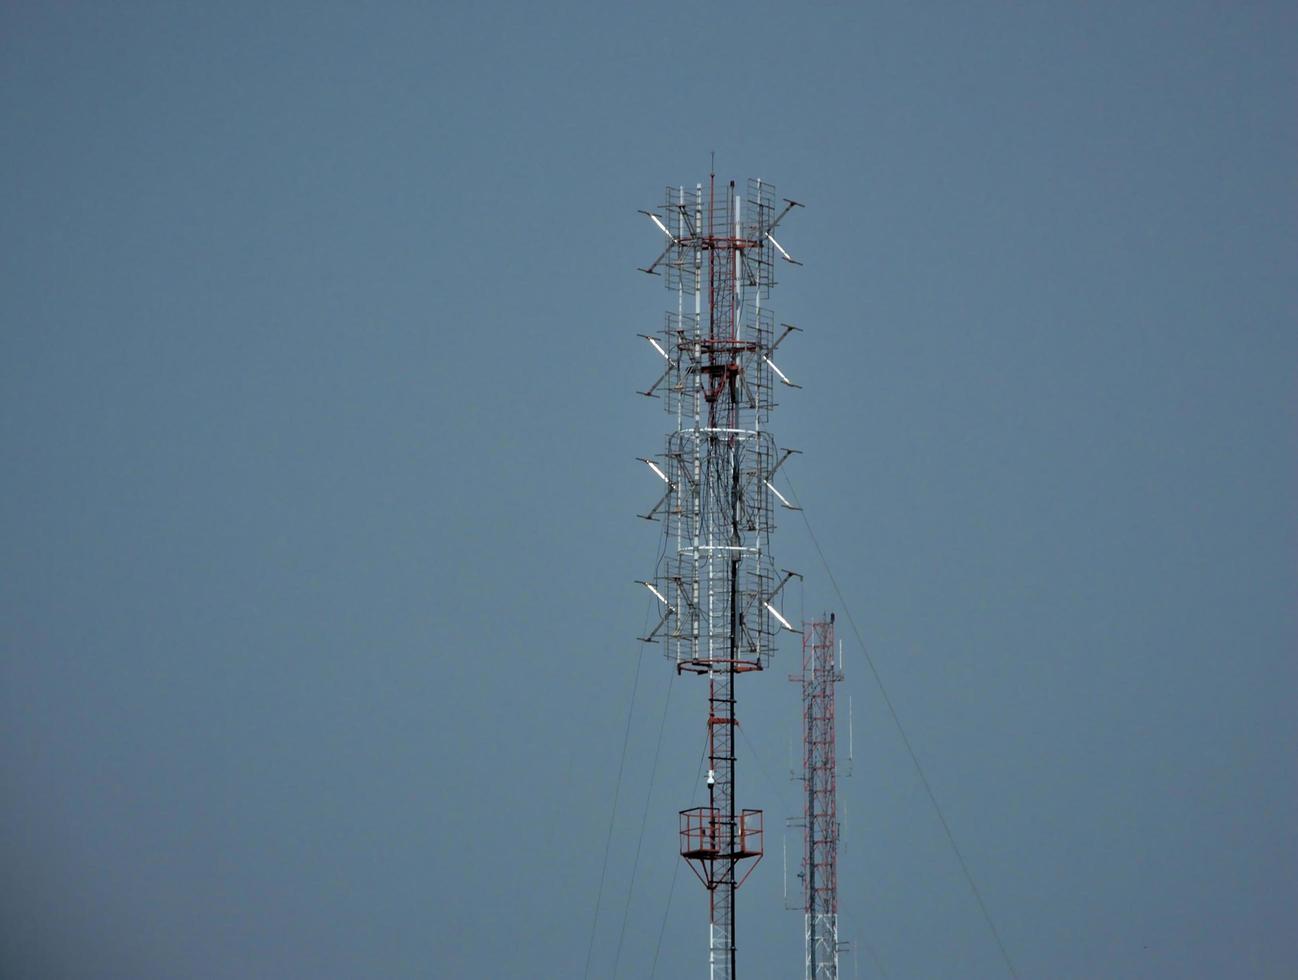 Large radio transmission towers. photo